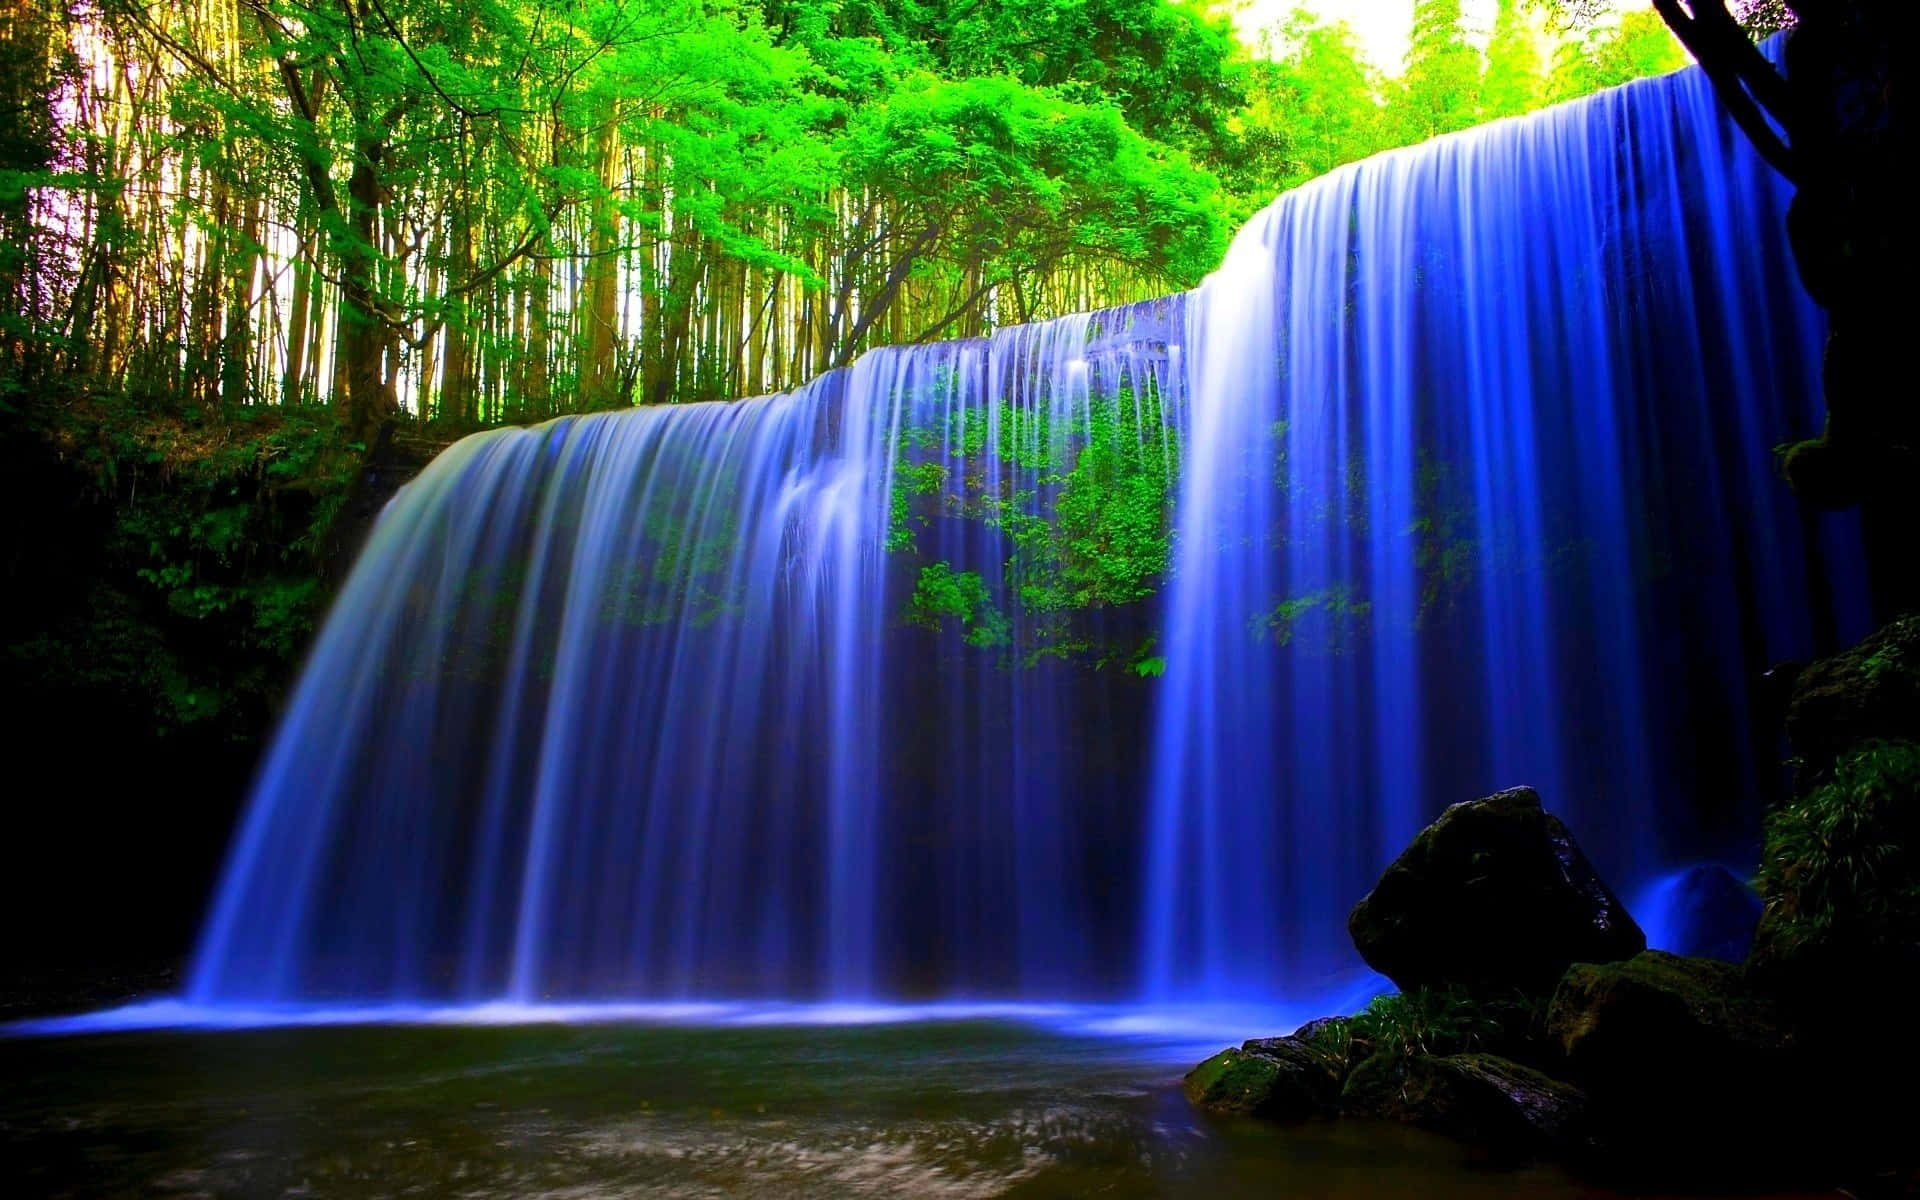 Upplevskönheten I Naturen Vid Denna Vackra Vattenfall!